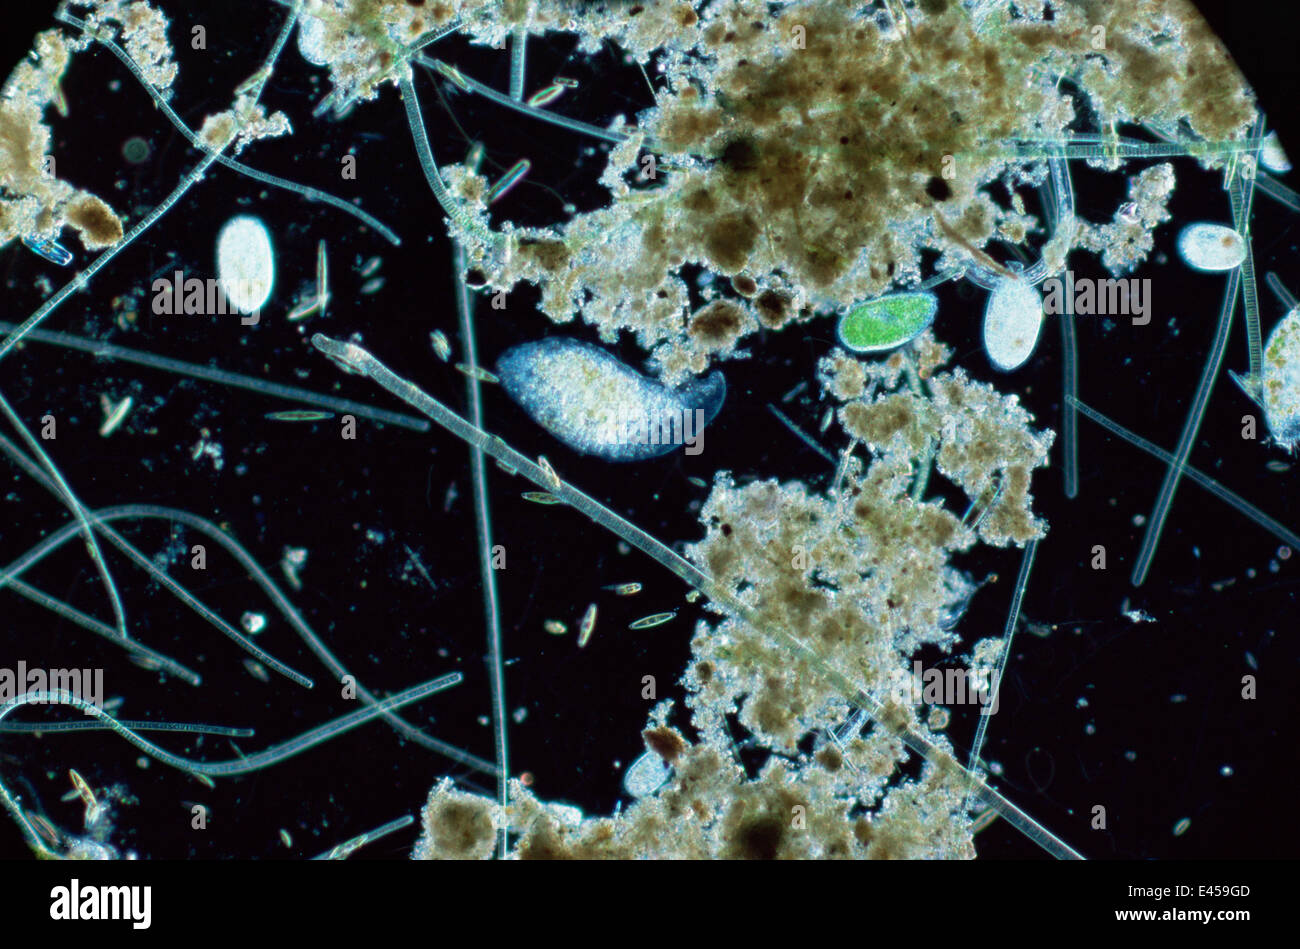 La vida del estanque mostrando ciliados, diatomeas y algas Foto de stock